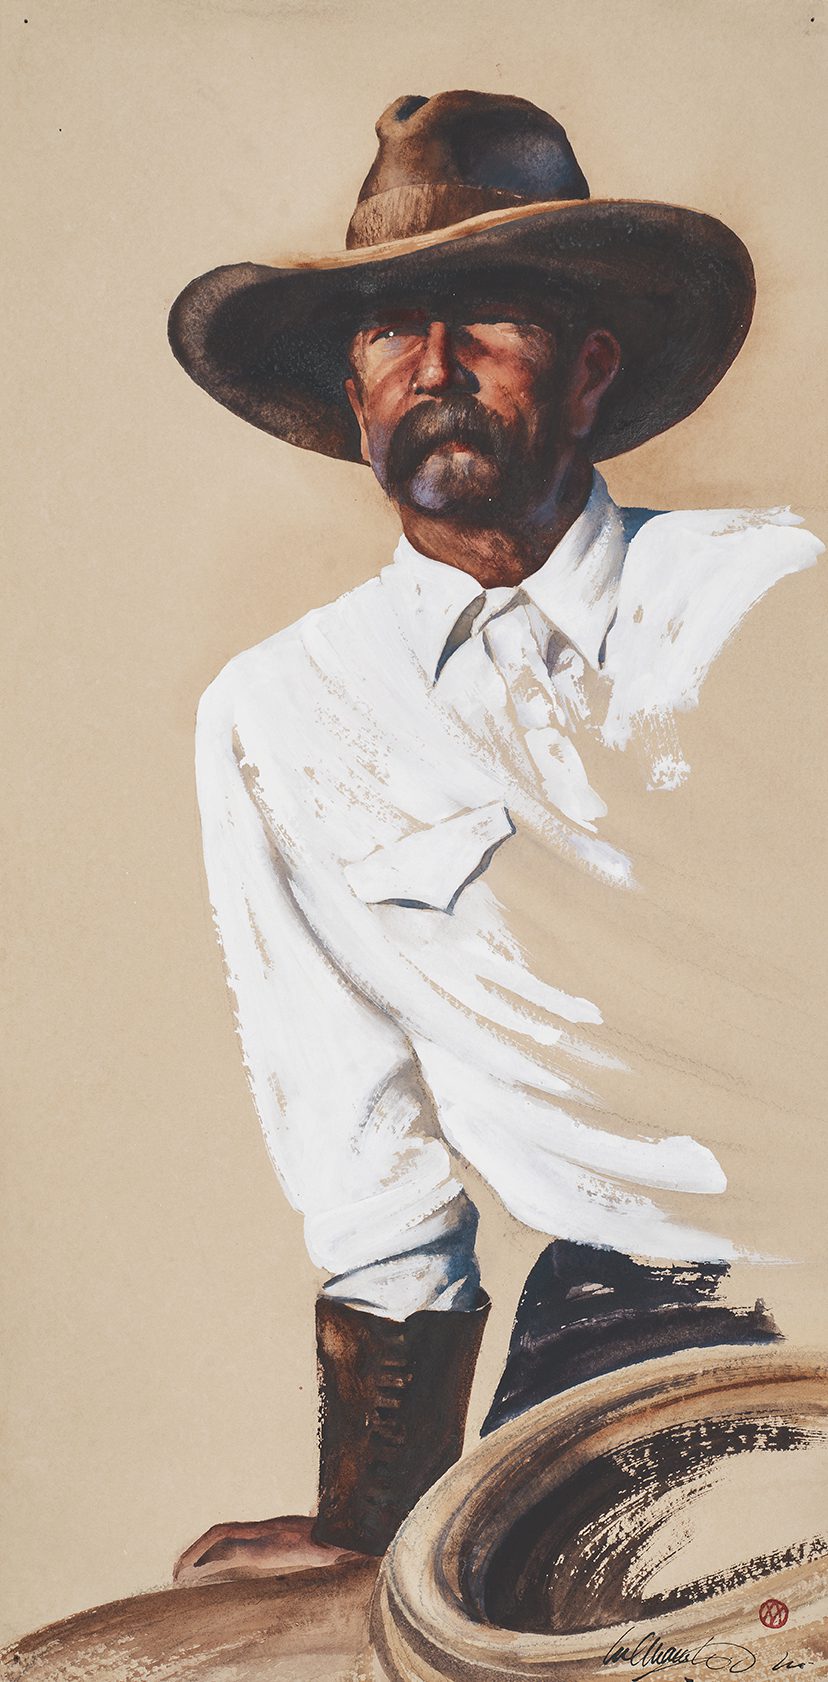 Artwork of a cowboy